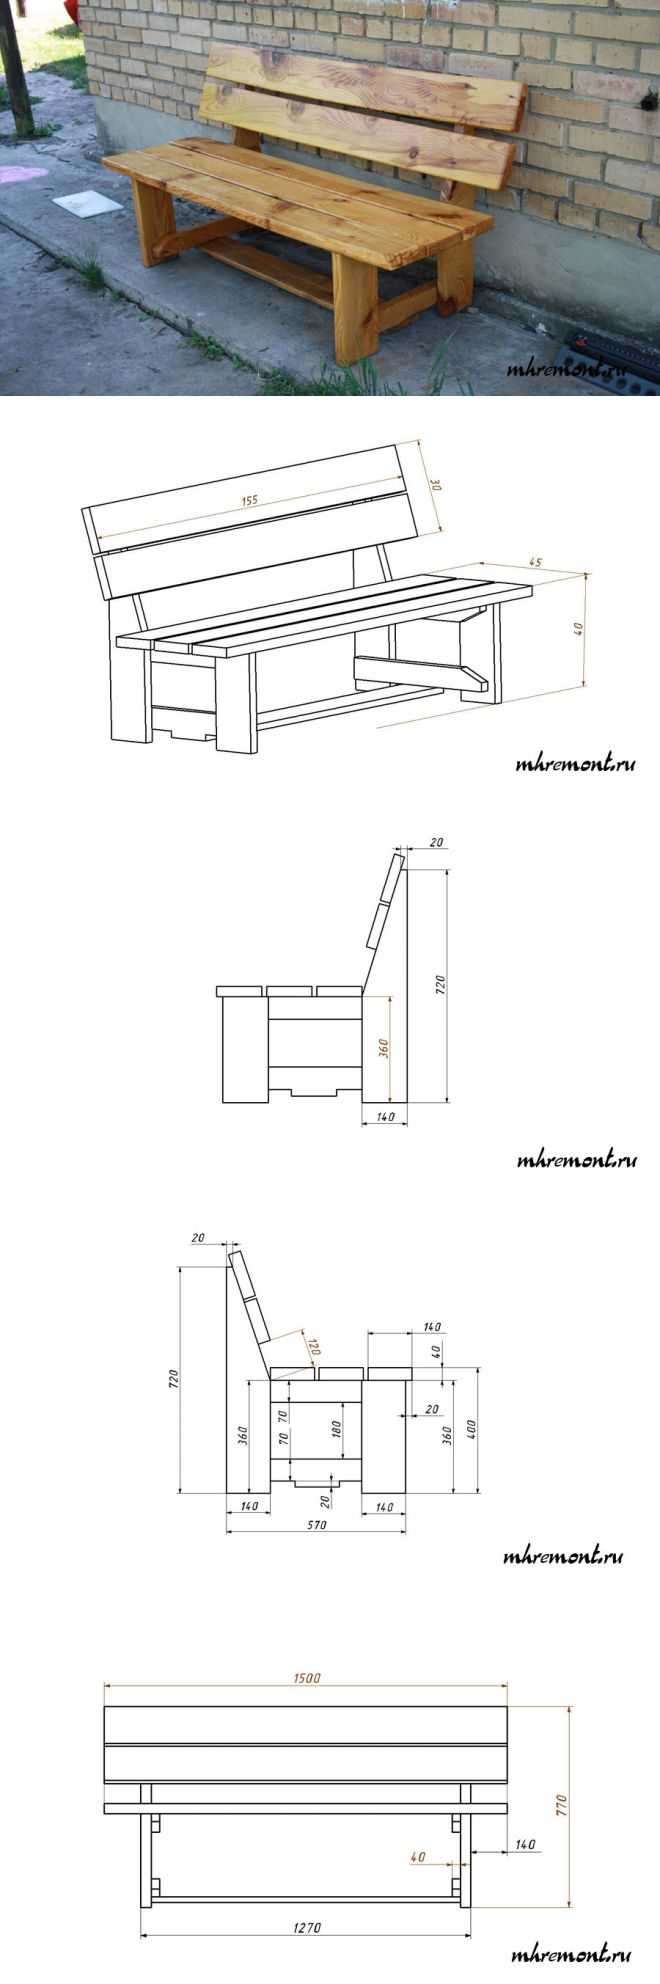 чертеж деревянной скамейки со спинкой и подлокотниками